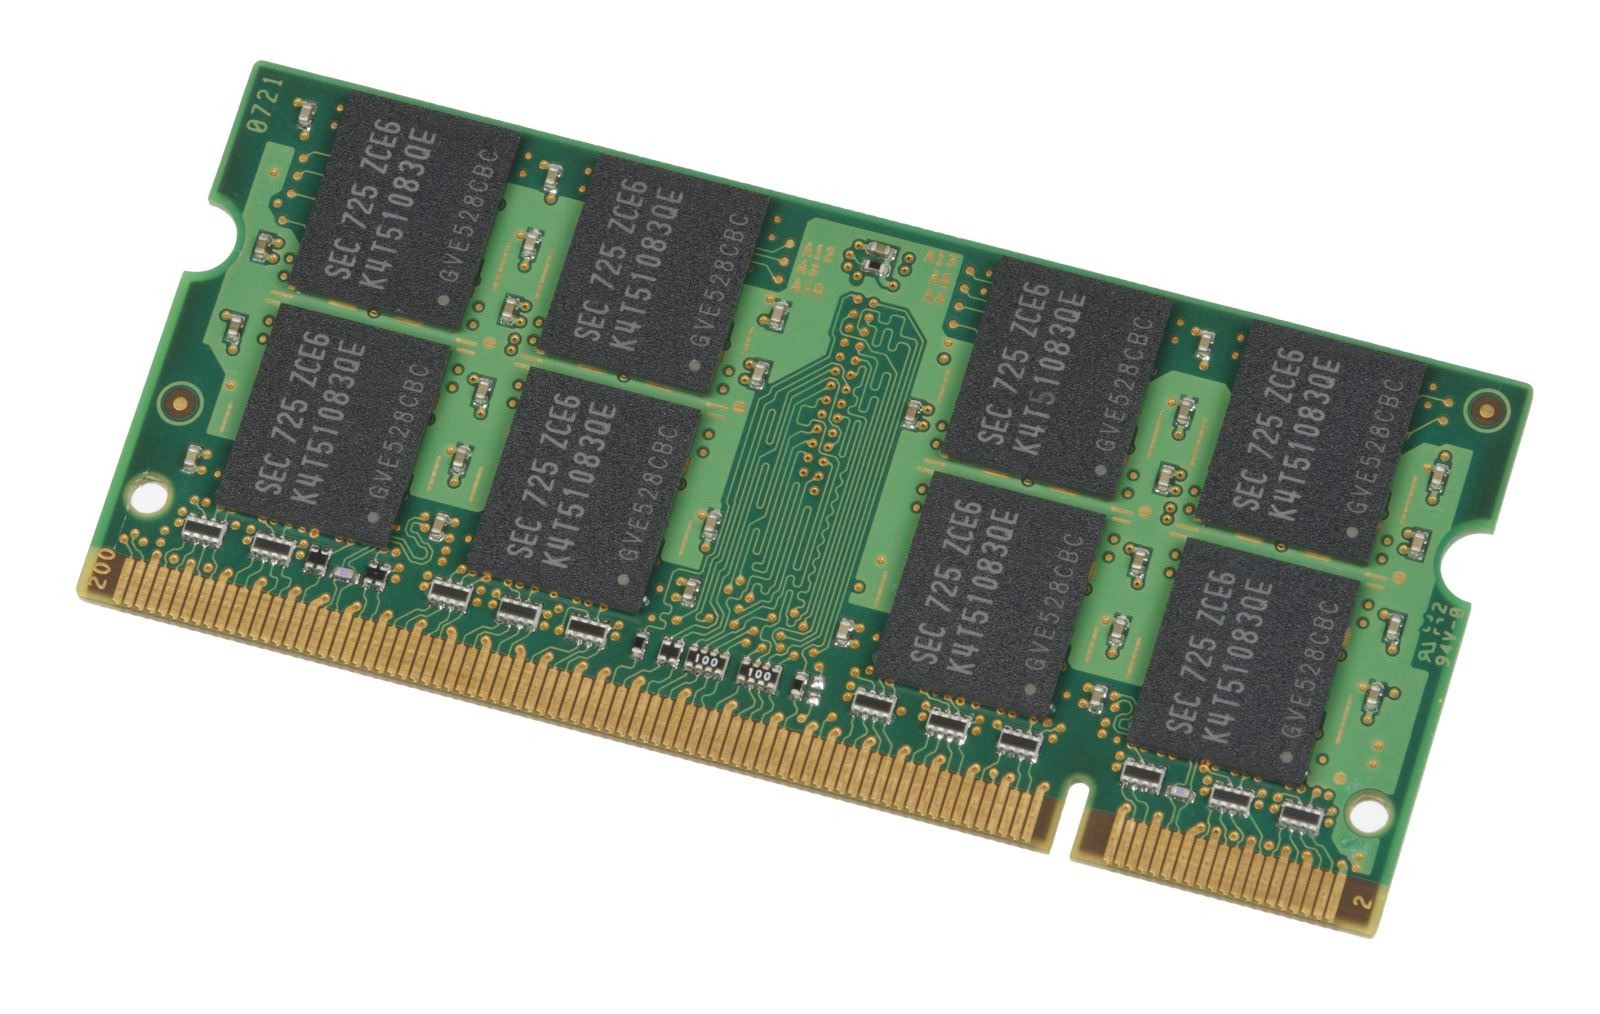 RAM DDR3 là gì